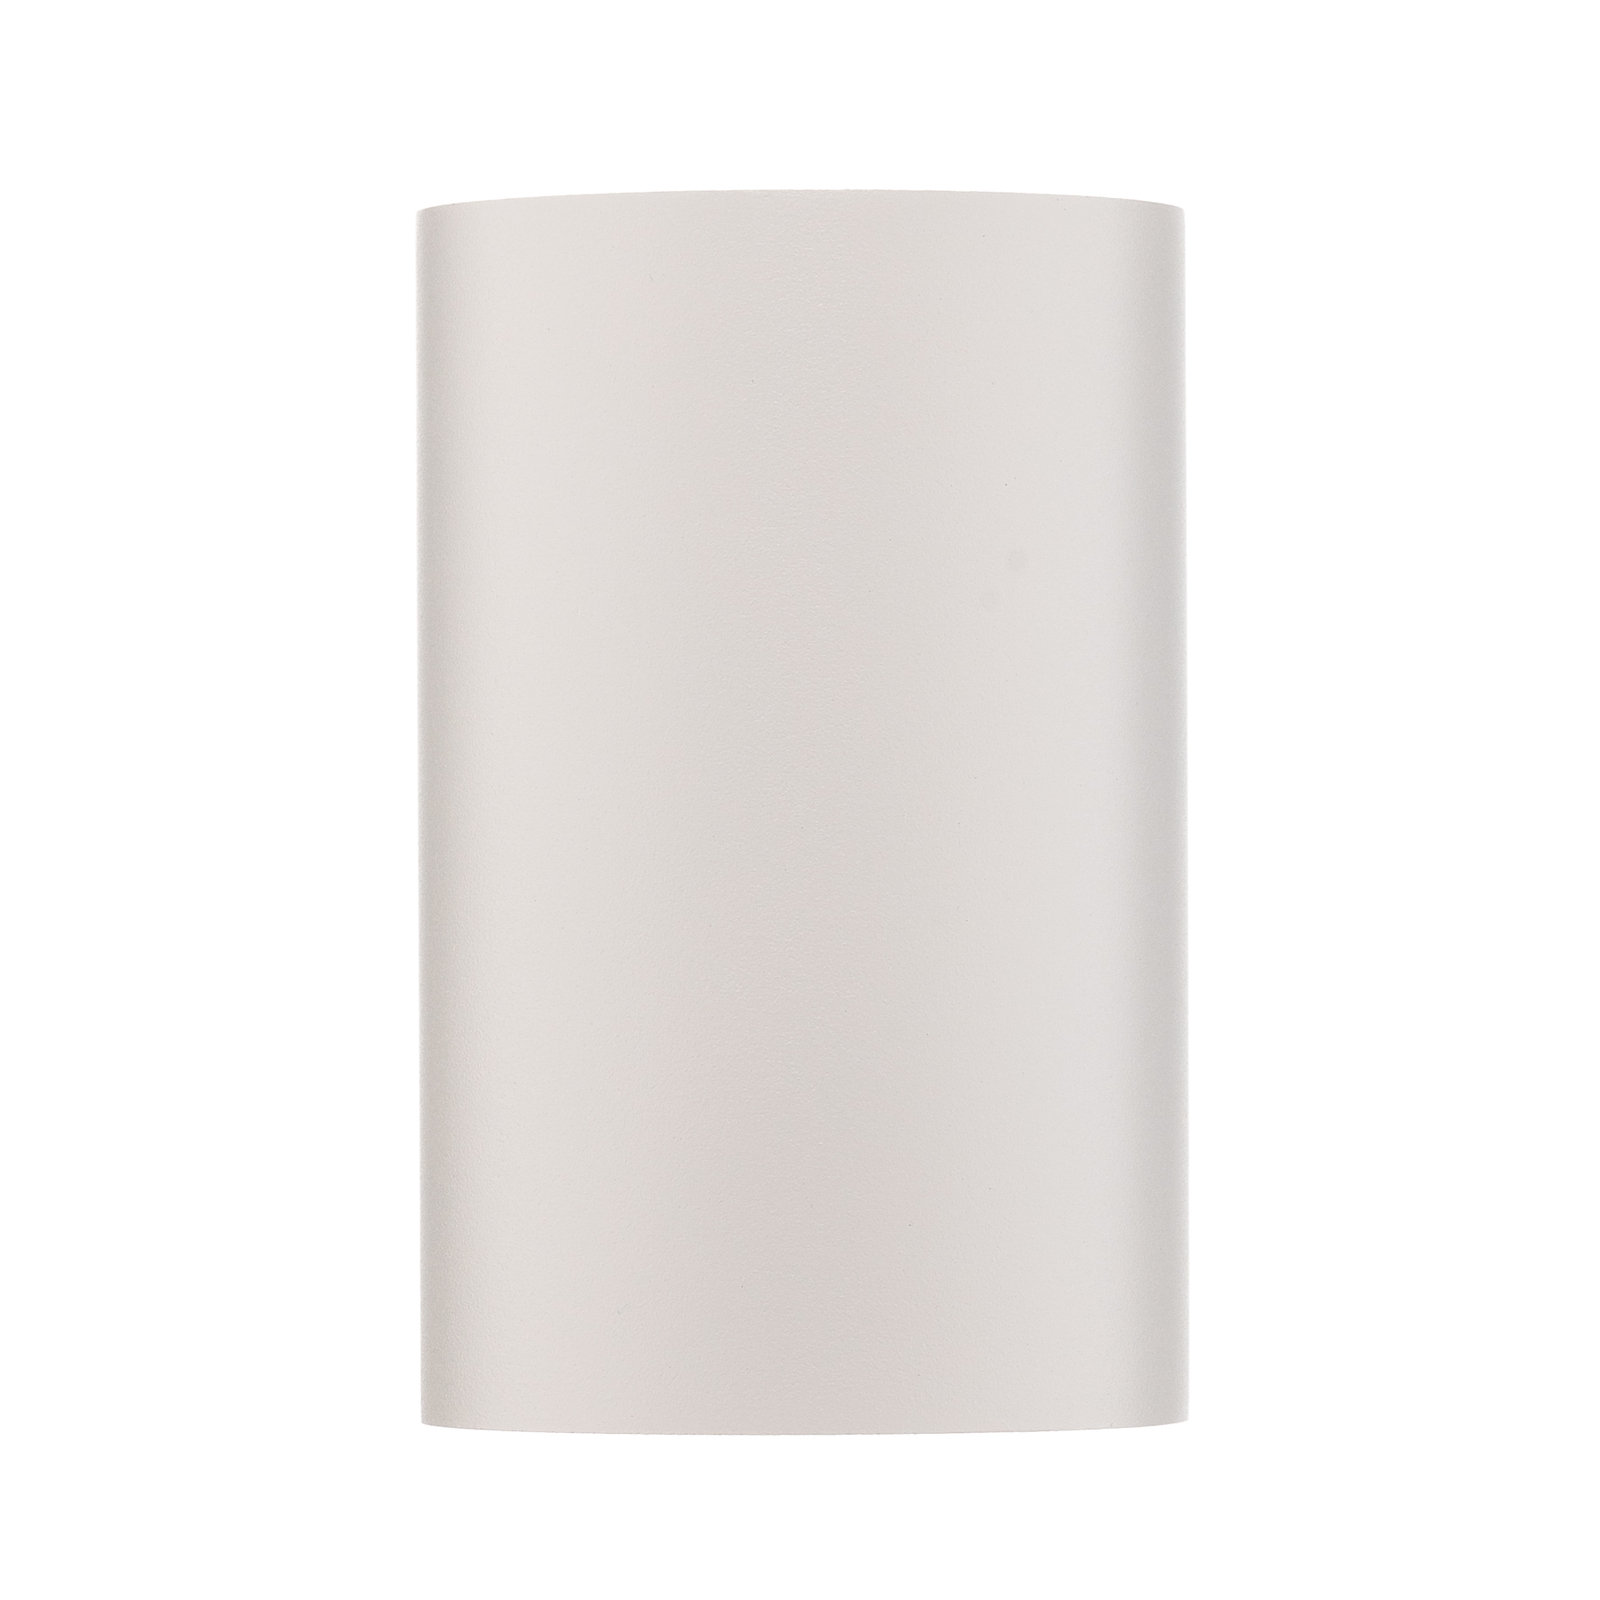 Spot pour plafond Bit M de forme cylindrique, blanc